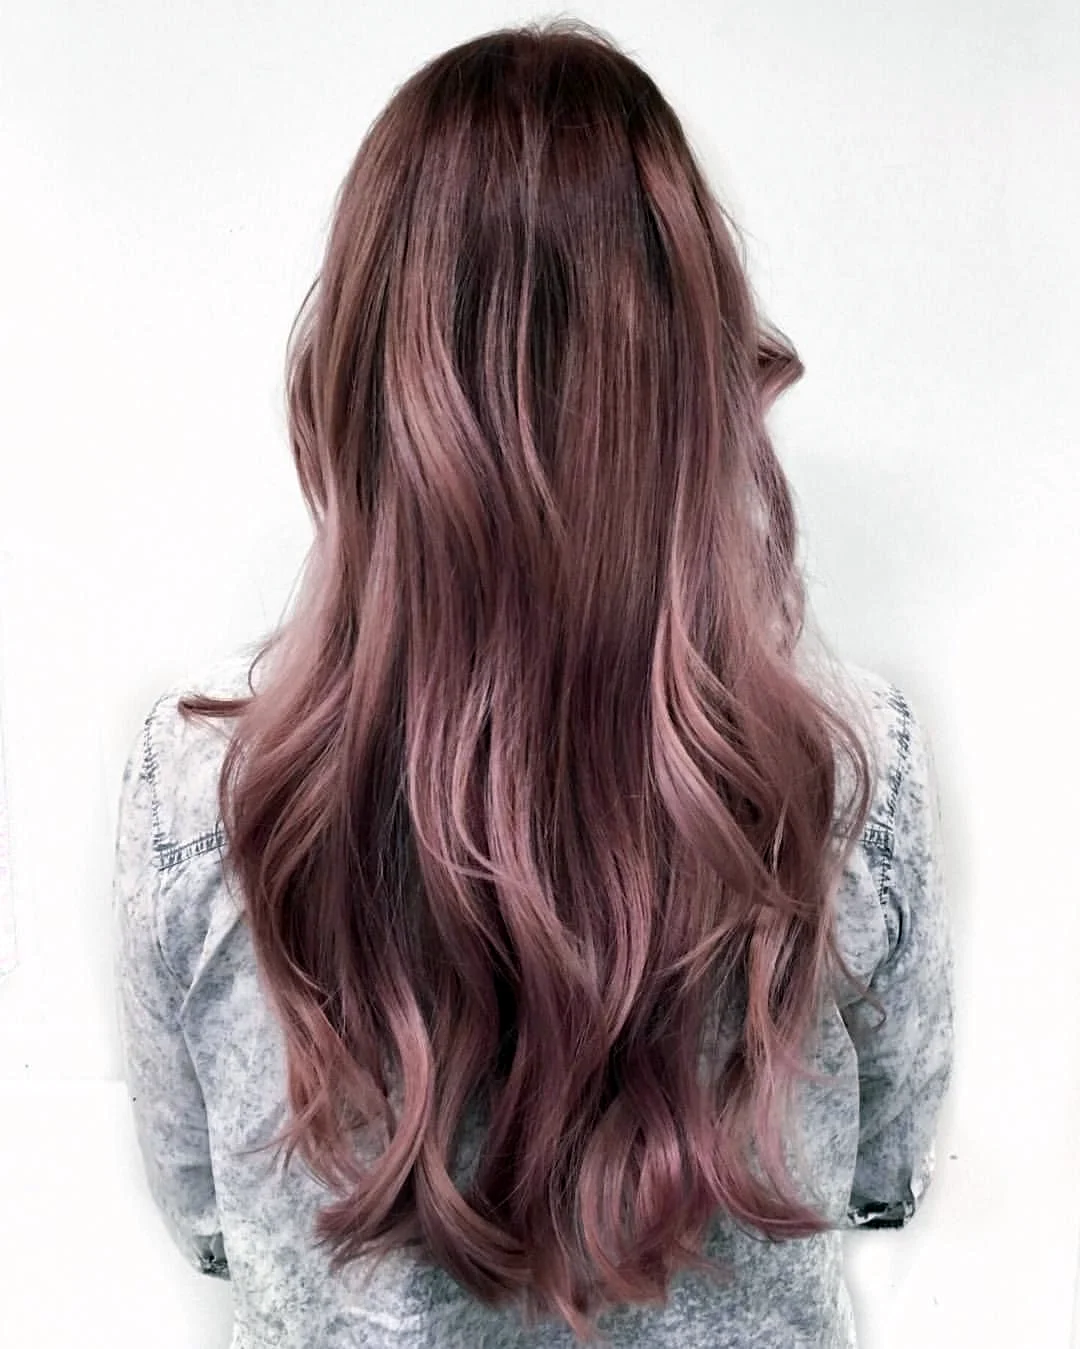 Русый розовый цвет волос. Русые волосы с розовым оттенком. Русые волосы с розовым отливом. Розовый русый. Рксве волосы с розовым отливом.